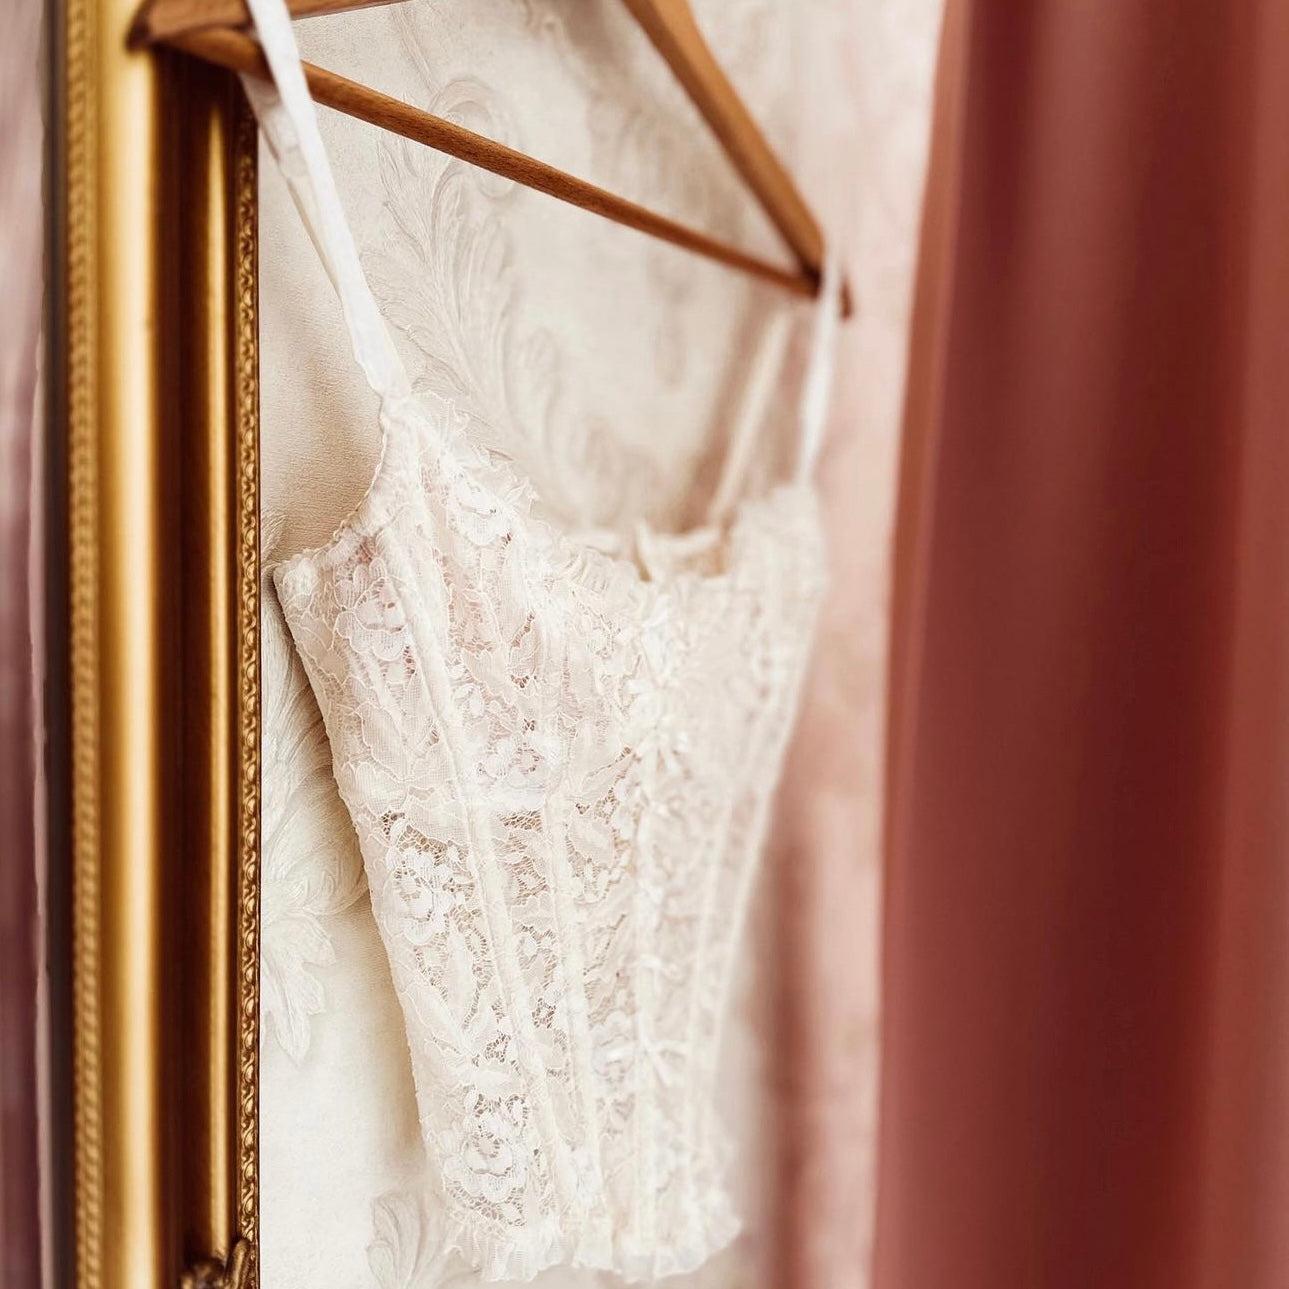 La Perla shimmery rose gold leaf corset made in